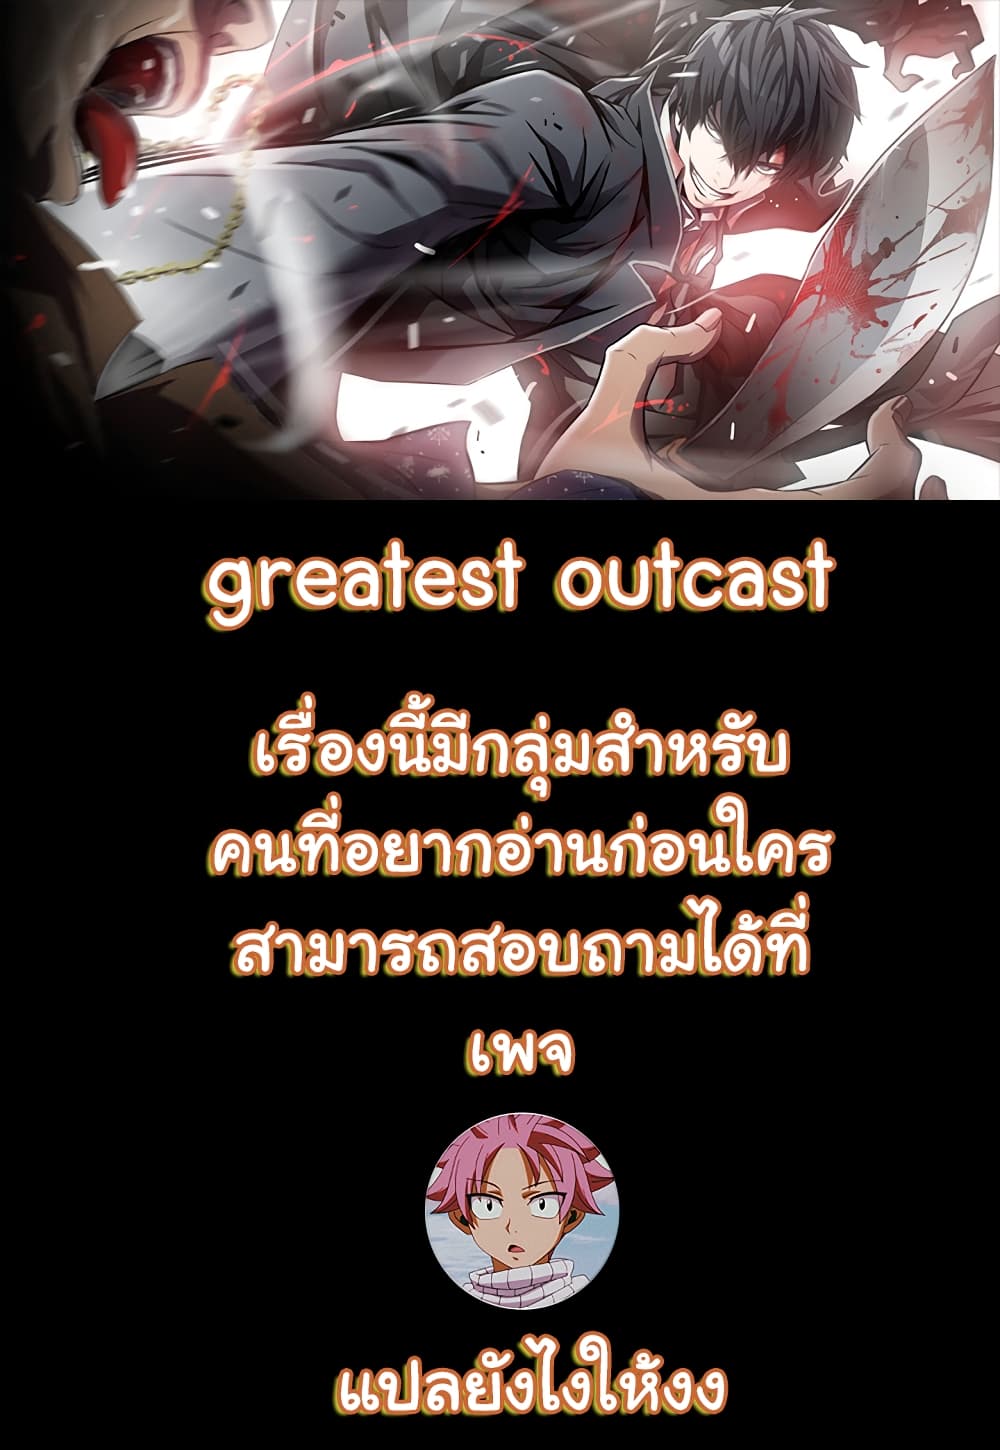 Greatest Outcast 3 (1)